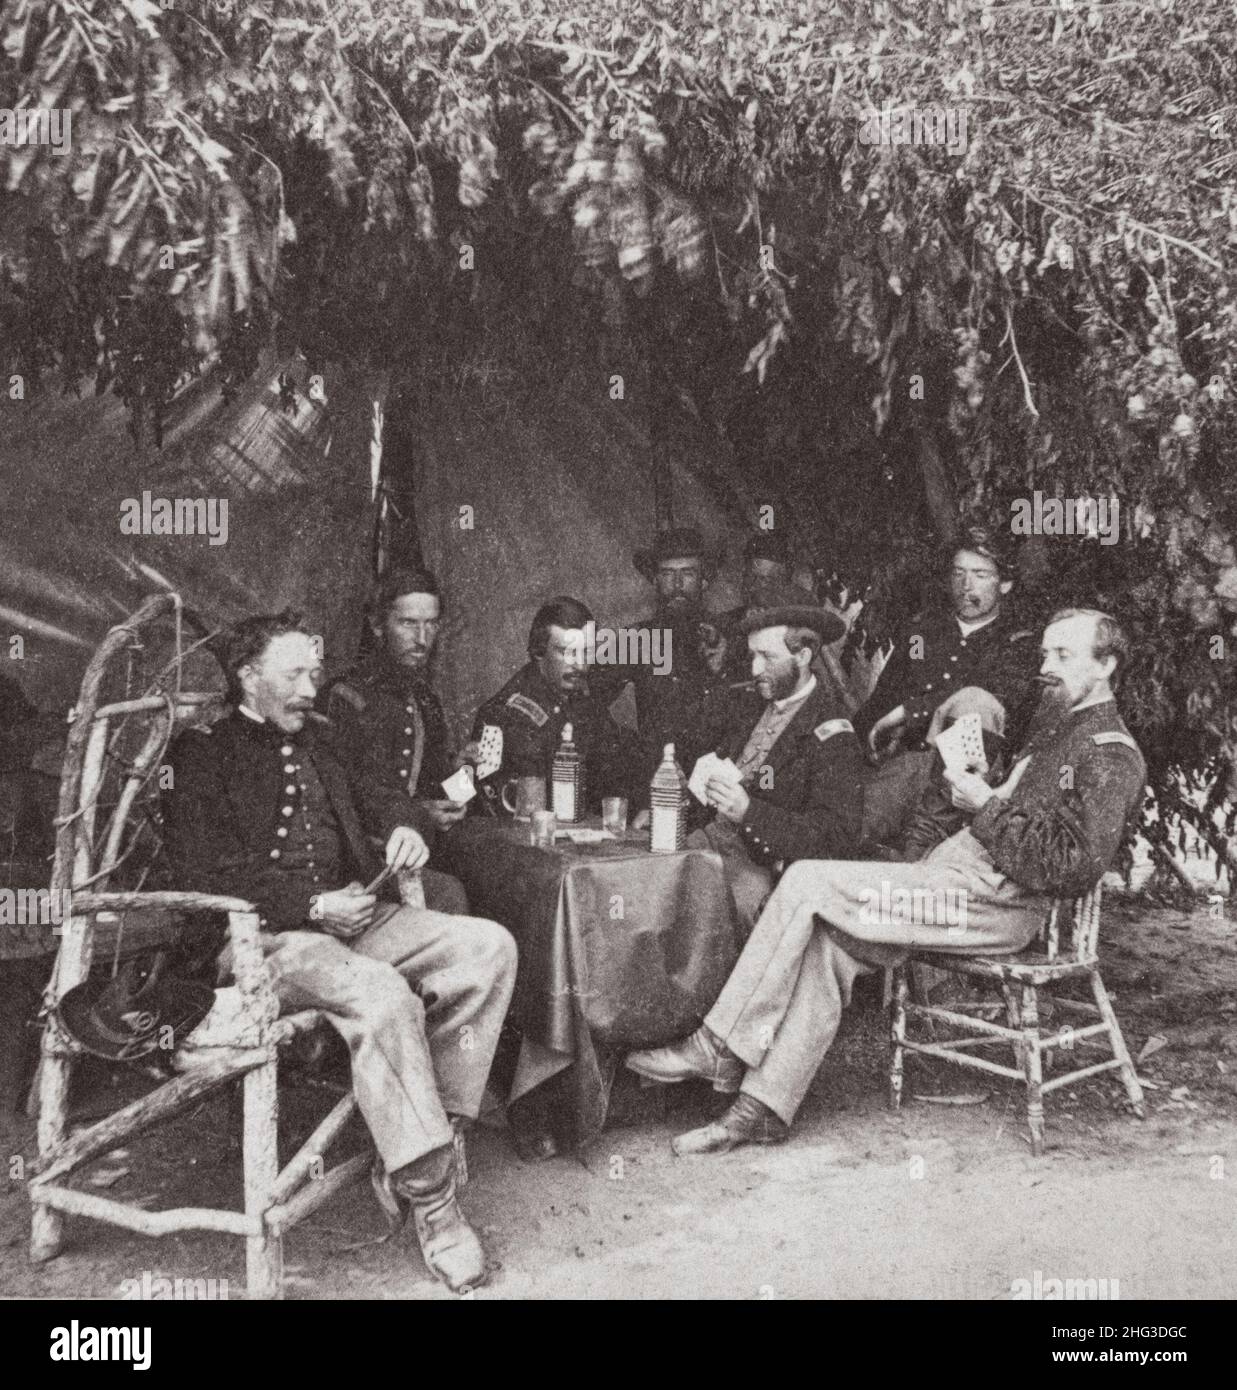 Amerikanischer Bürgerkrieg. 1861-1865 Soldaten der 134th Illinois Volunteer Infantry spielen Karten in Columbus, Kentucky. USA. 1864 Stockfoto